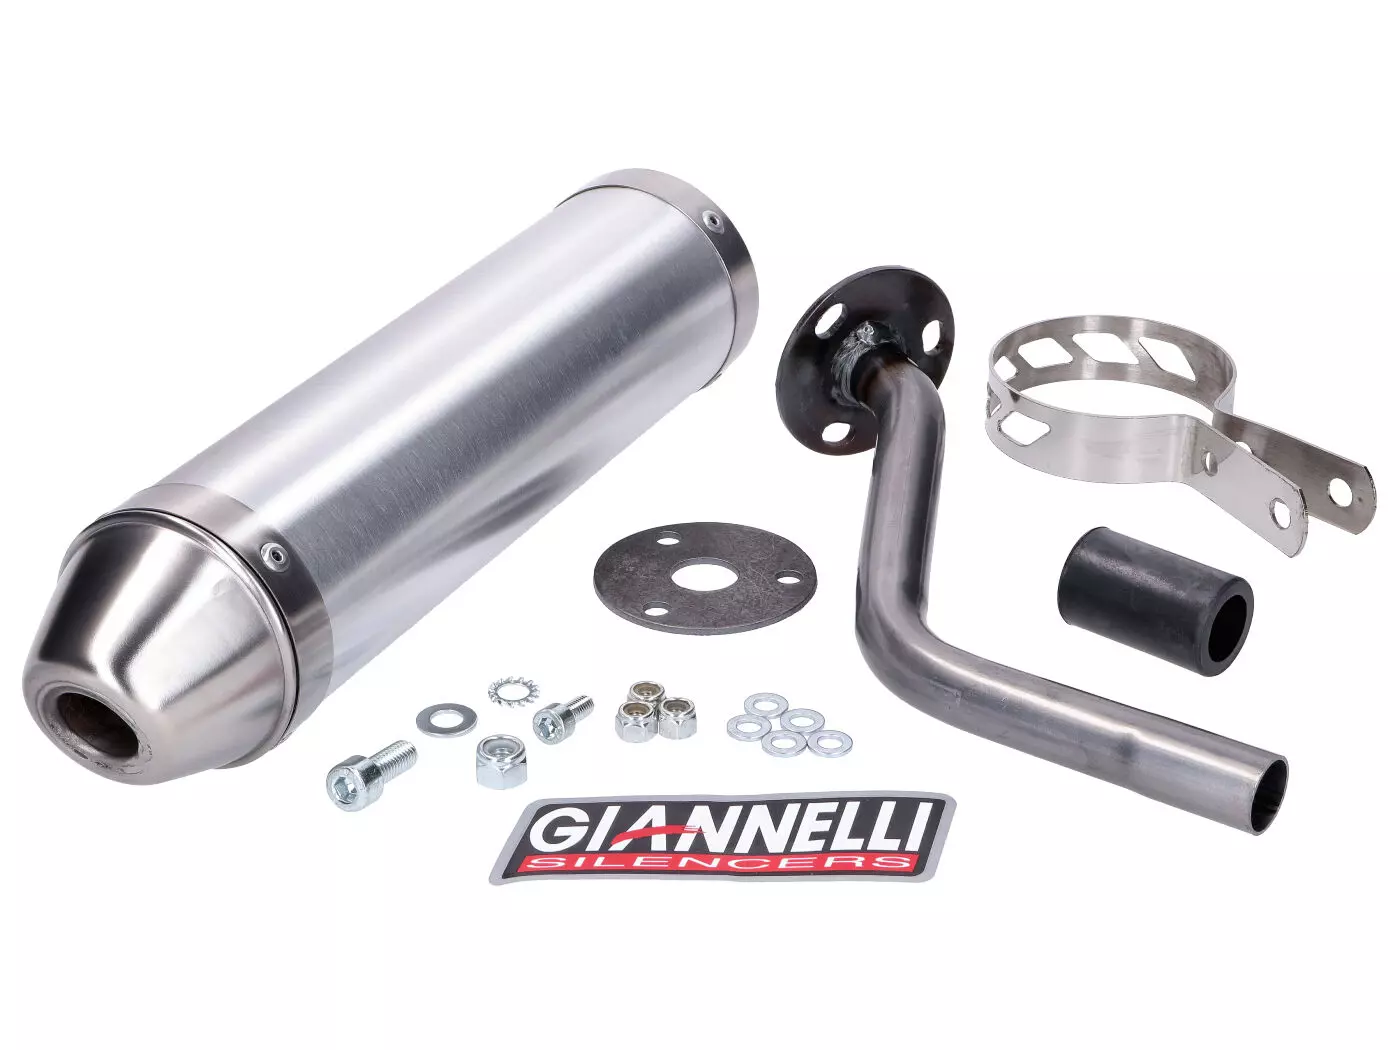 Einddemper Giannelli Aluminium voor HRD Sonic 50 99-03